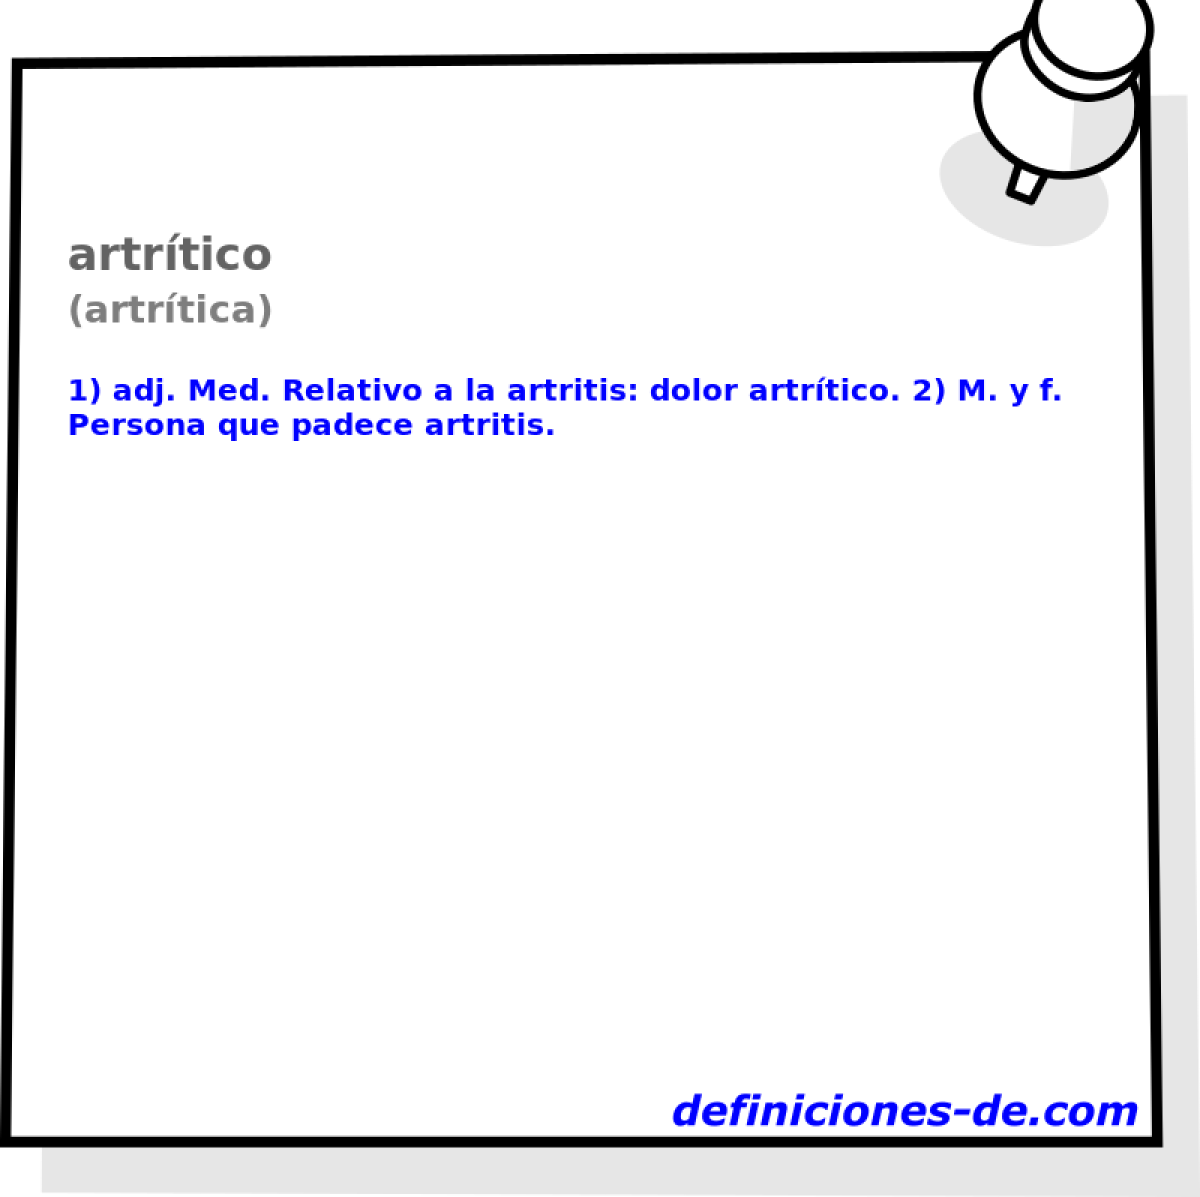 artrtico (artrtica)